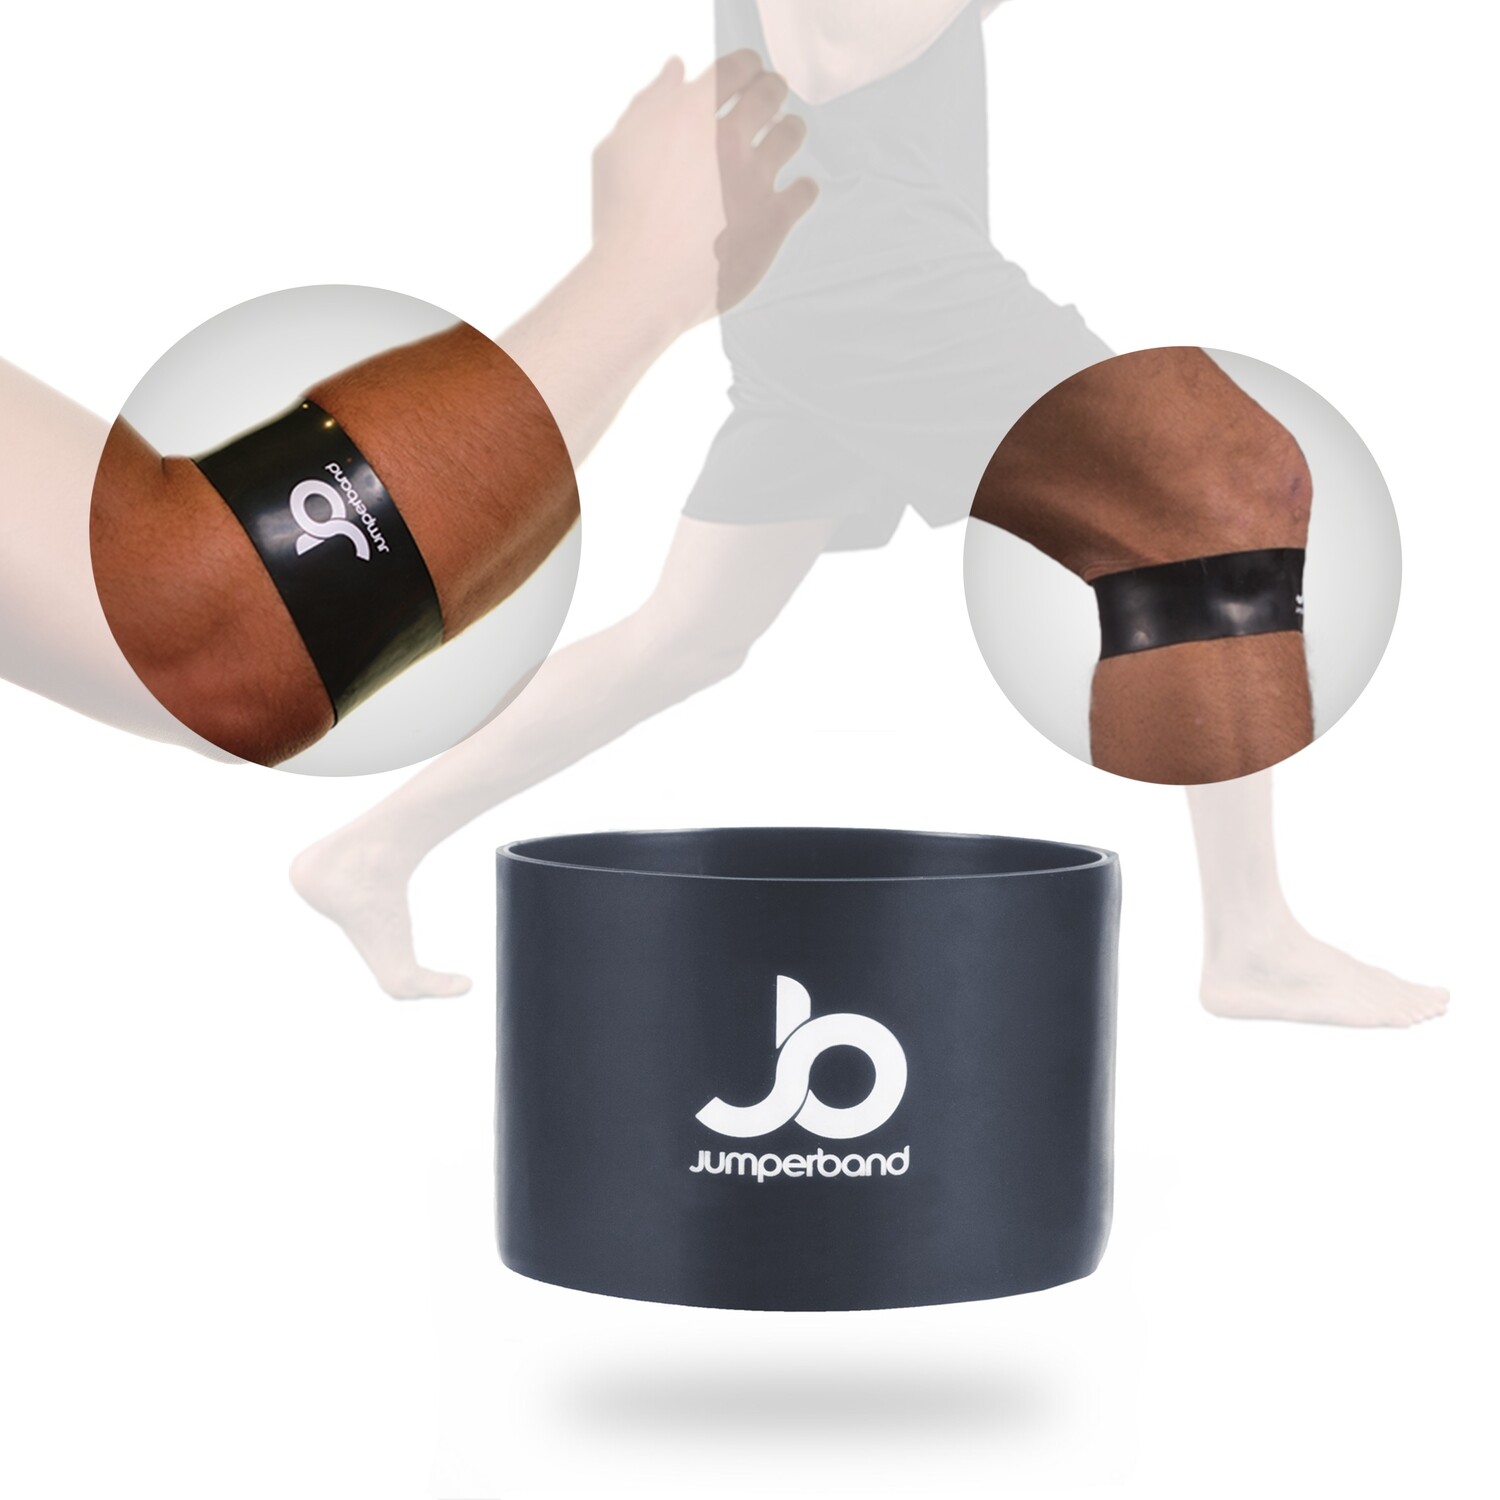 Jumperband Comfort - Stabilisering av knä/armbåge